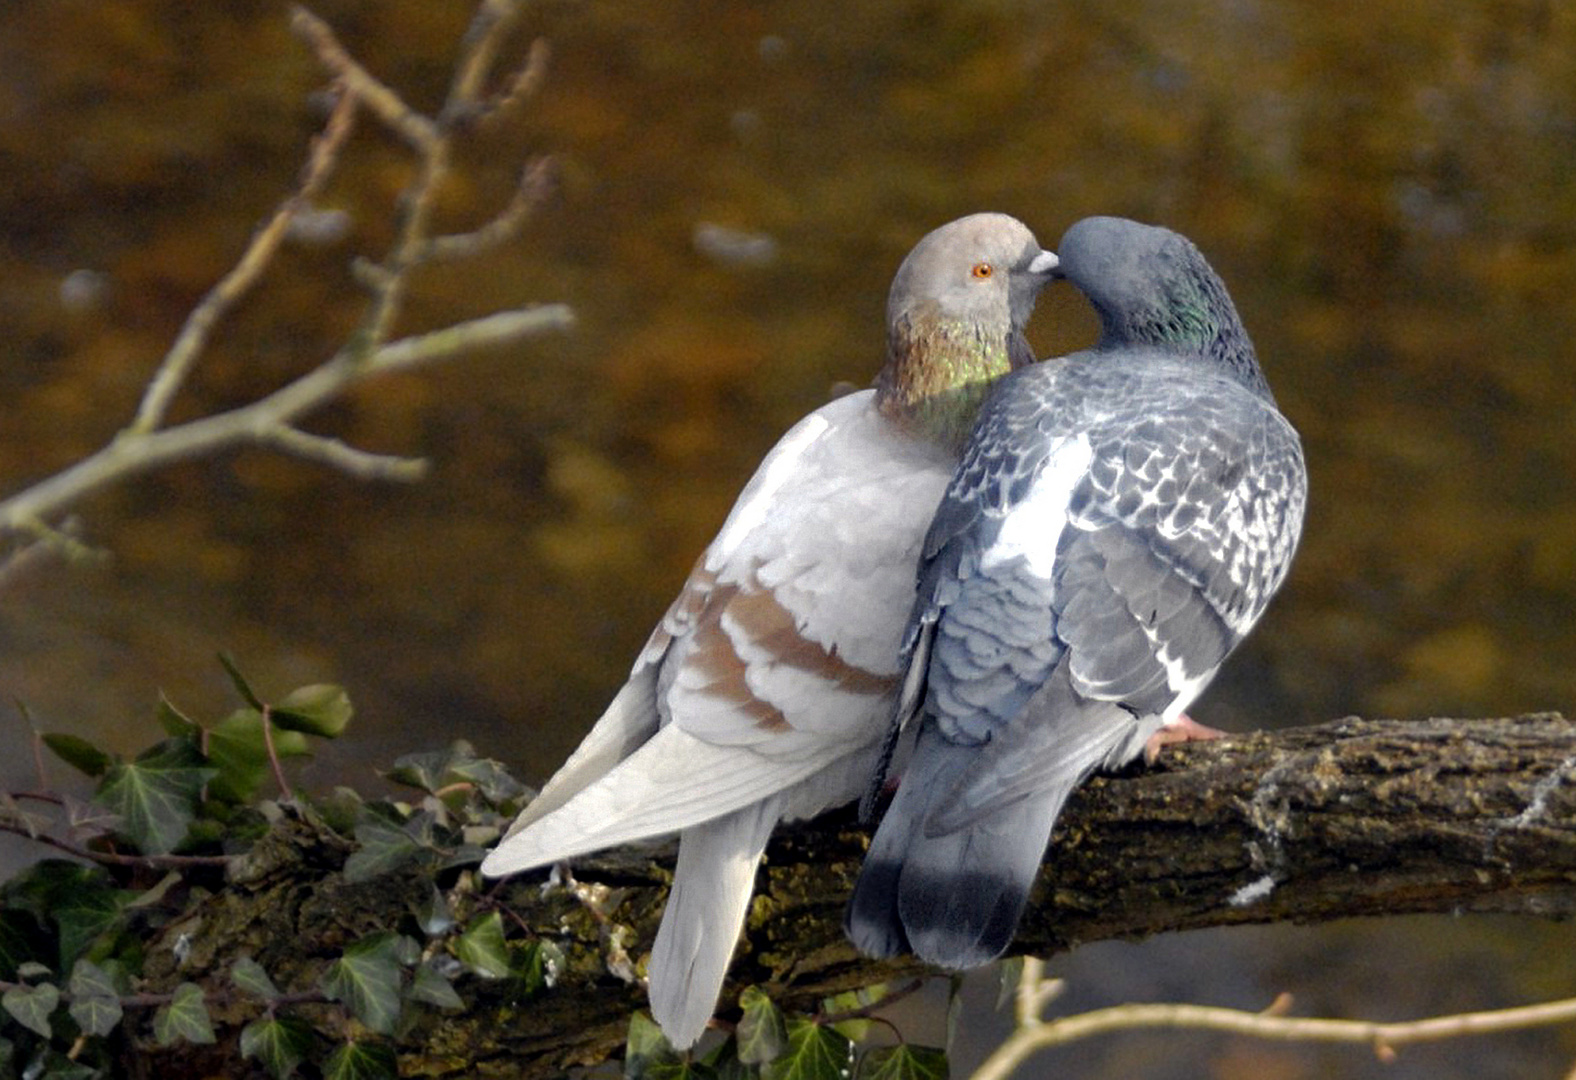 Deux pigeons s'aimaient d'amour tendre.